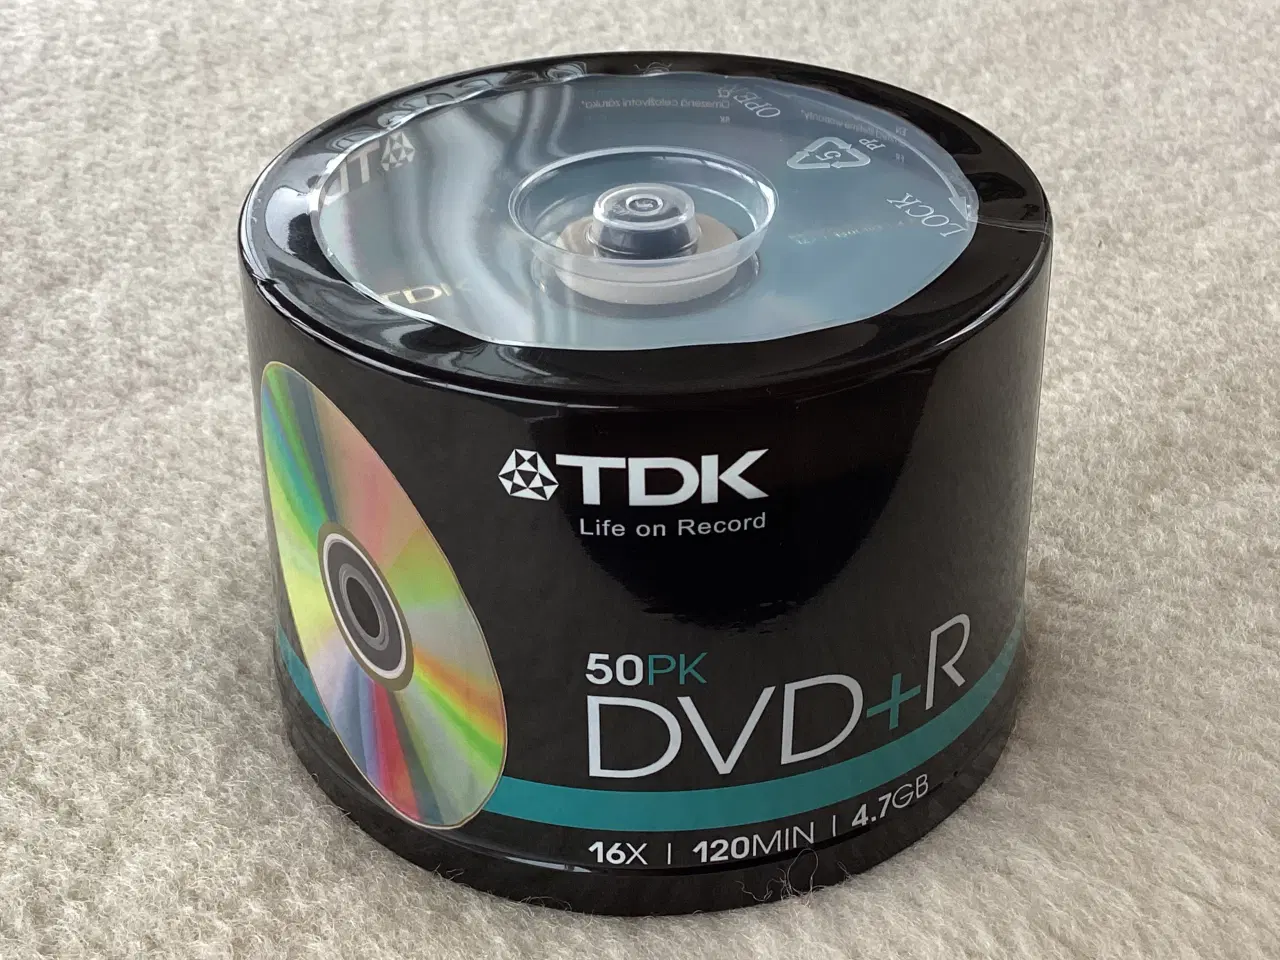 Billede 1 - DVD+R fra TDK.